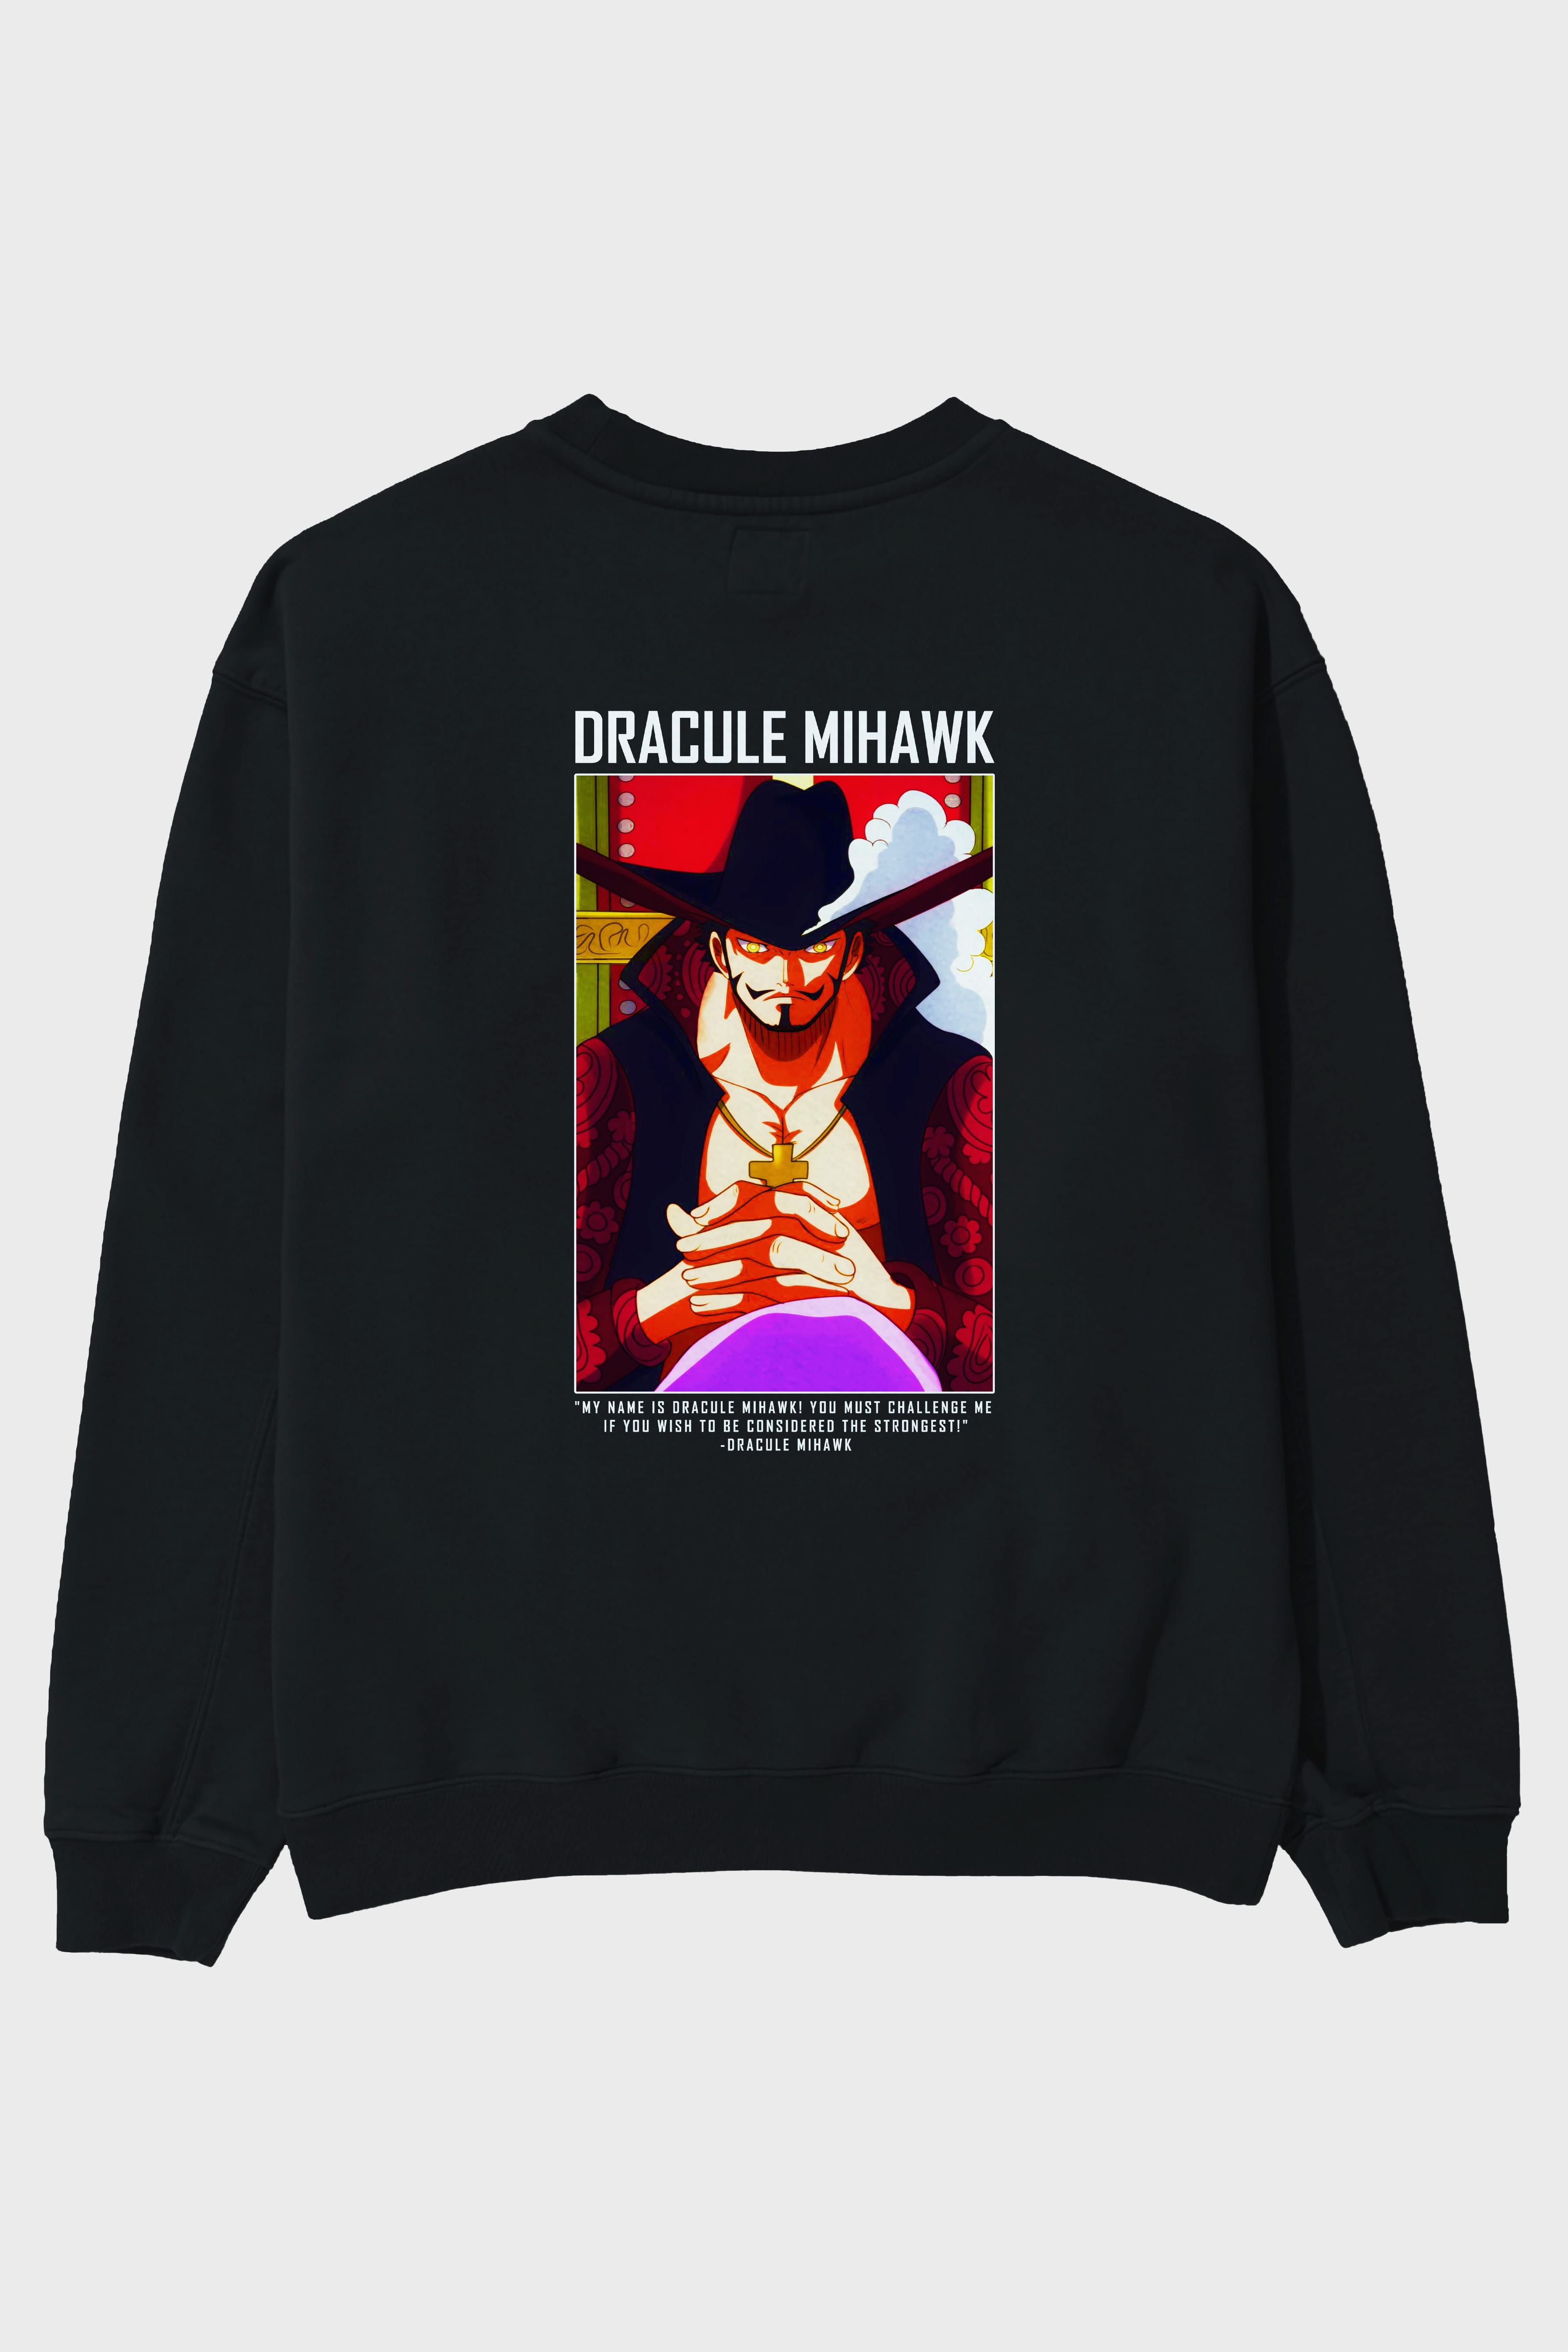 Dracule Mihawk Arka Baskılı Anime Oversize Sweatshirt Erkek Kadın Unisex